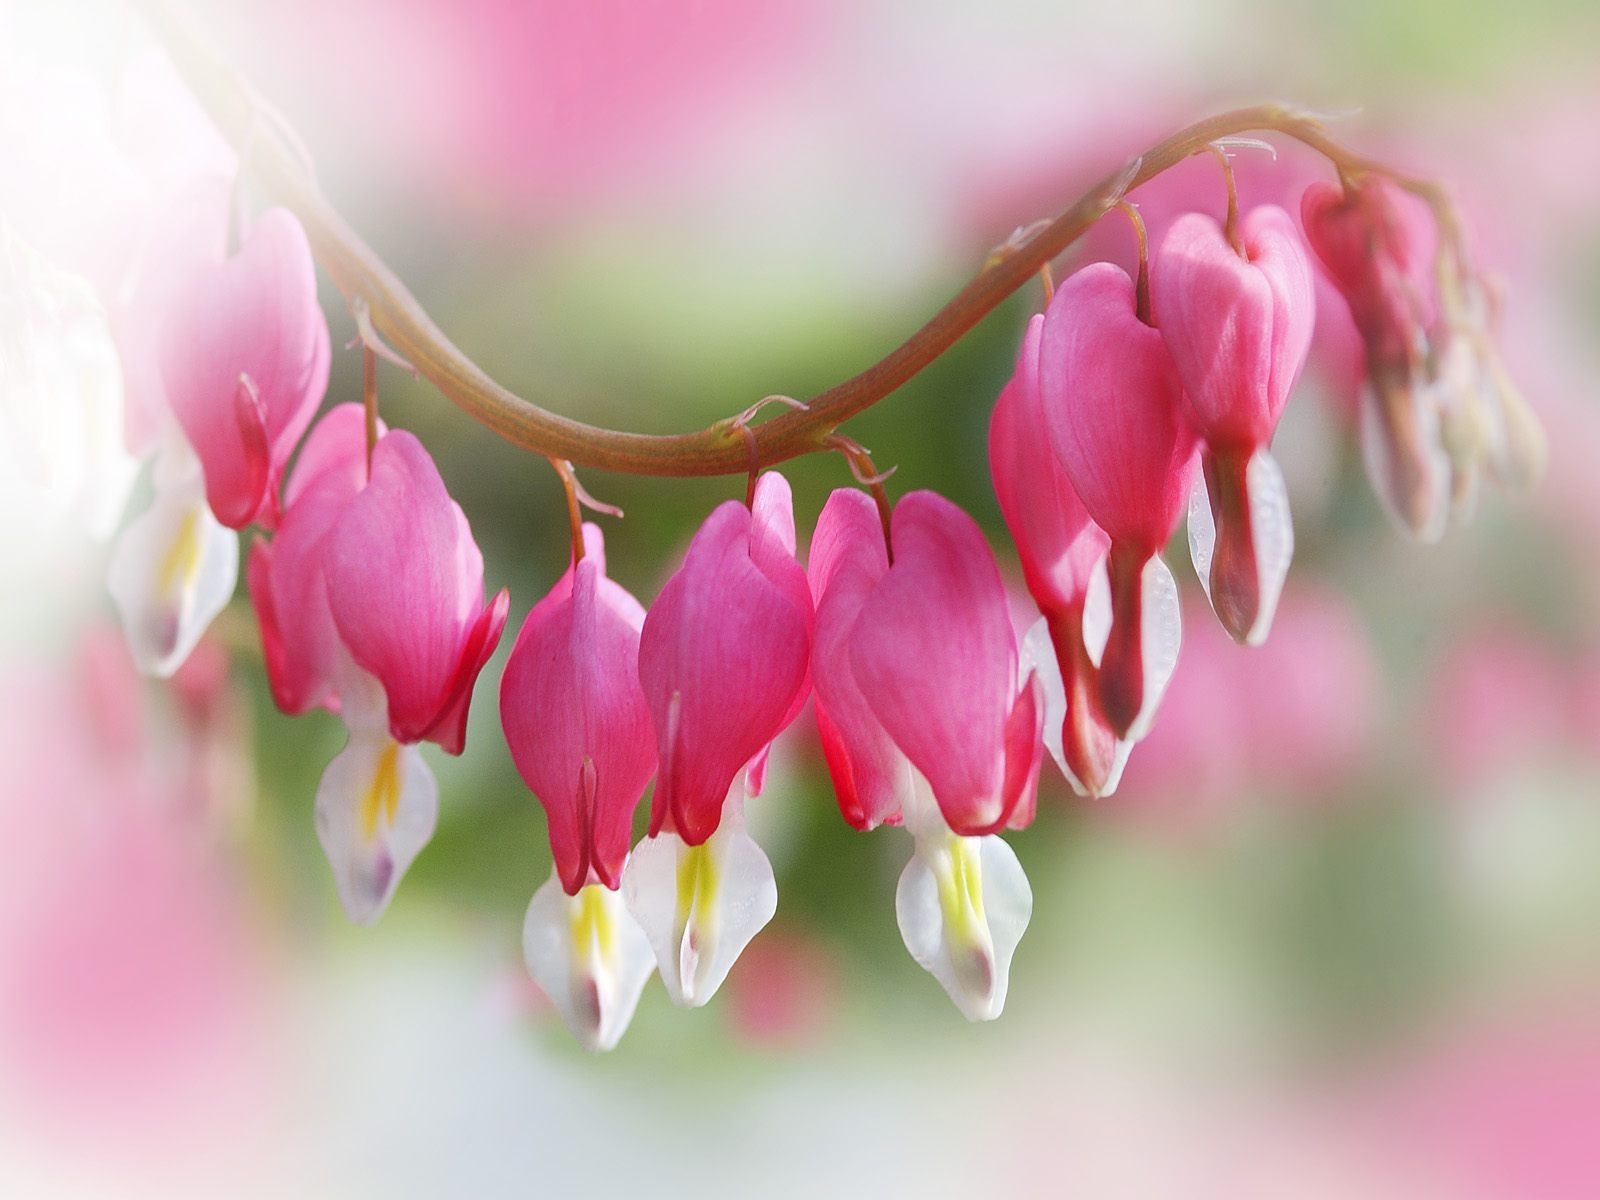 Flower Hearts Wallpapers en formato jpg para descarga gratuita